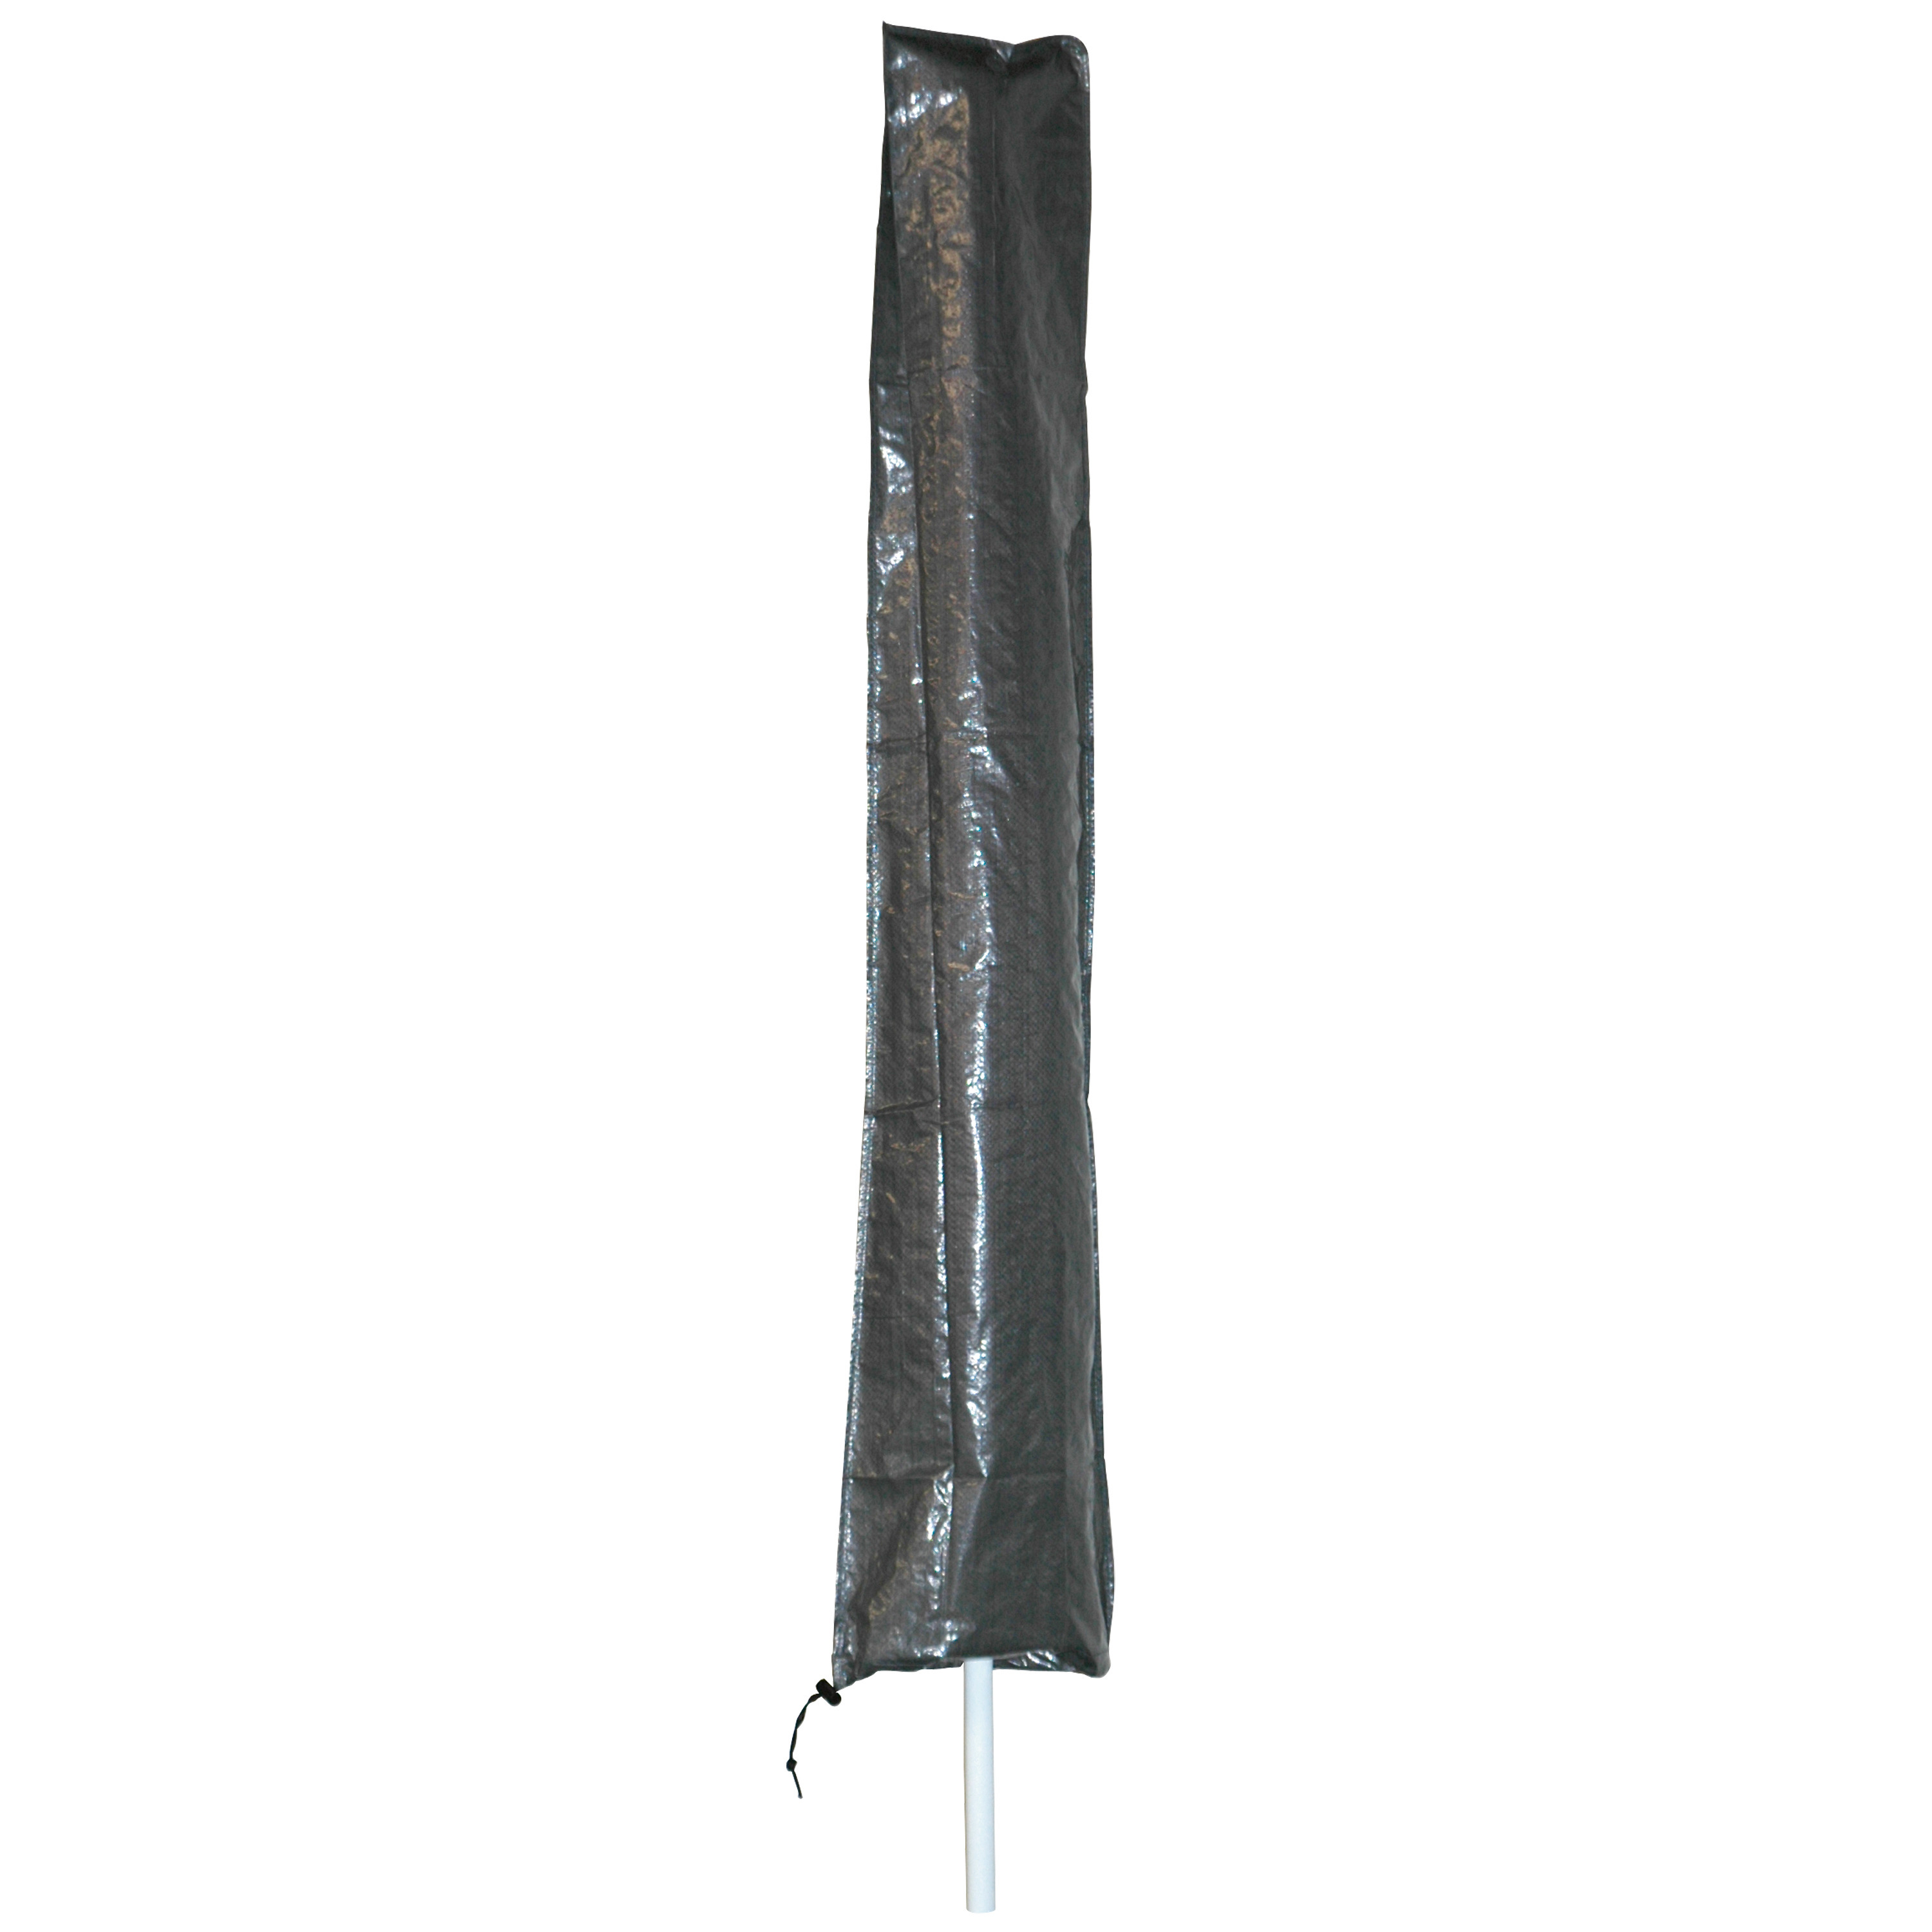 Afdekhoes-beschermhoes grijs voor zweefparasols met een diameter van 3,5 m inclusief stok